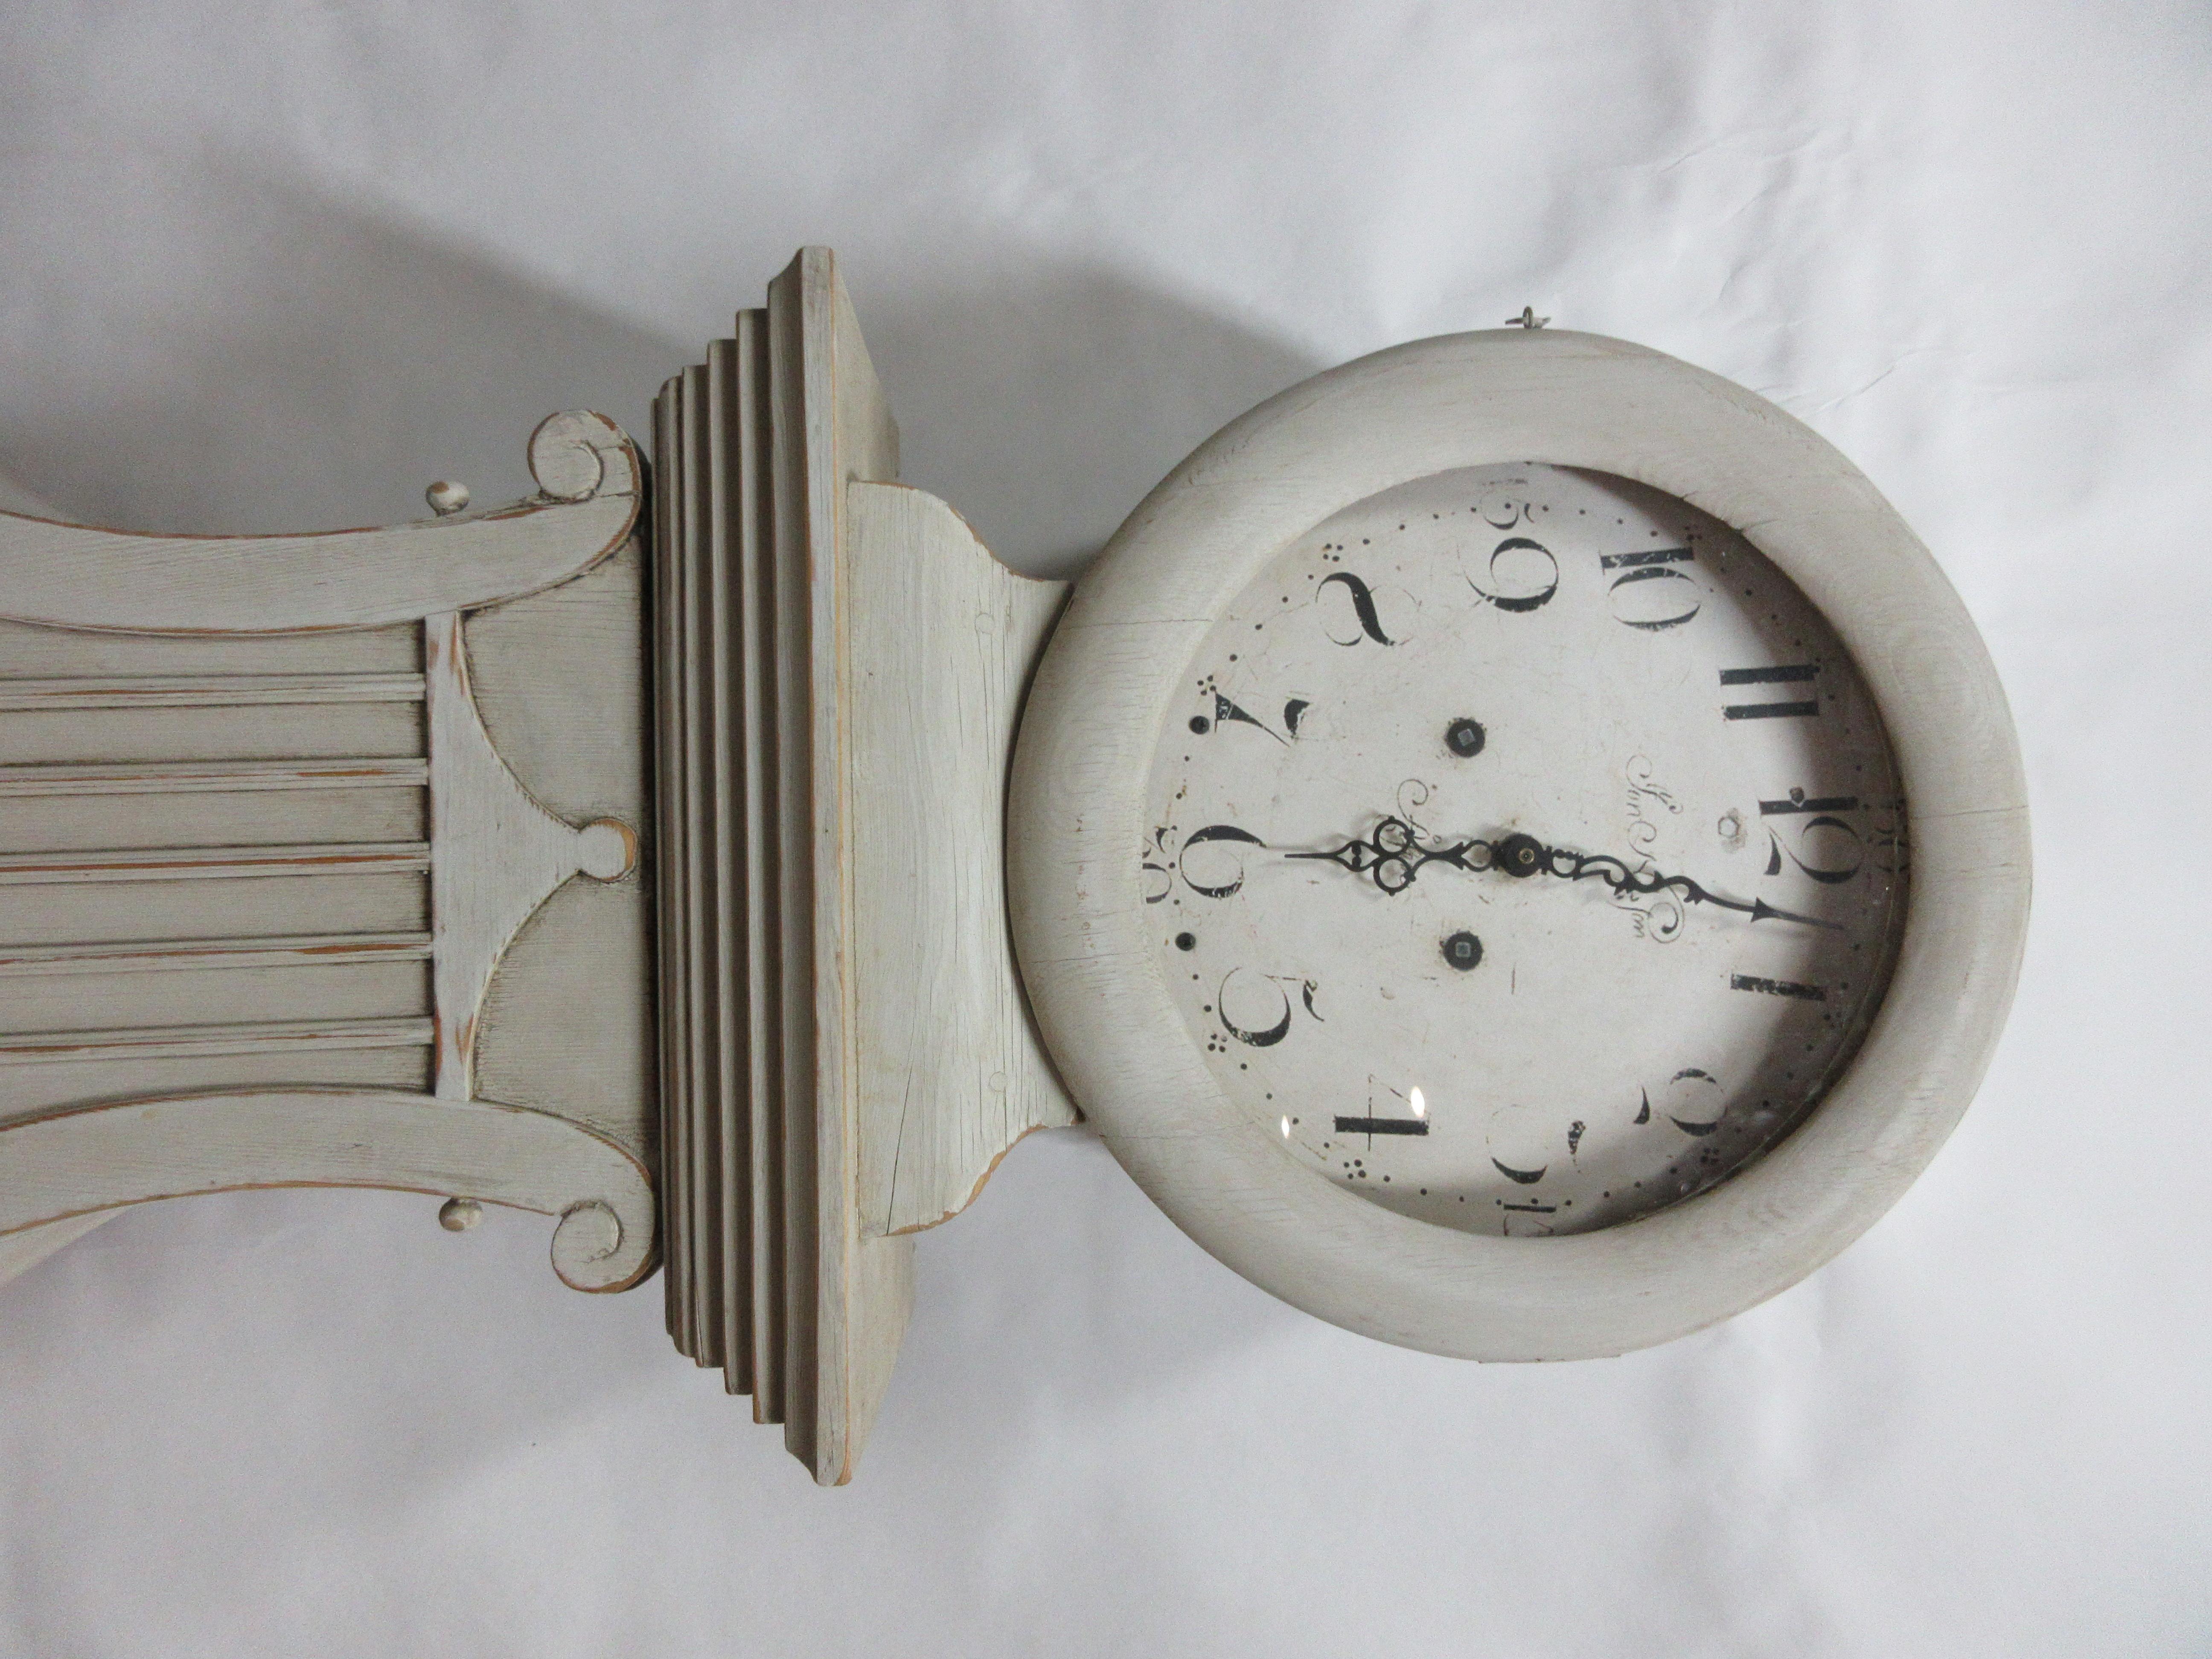 Dies ist eine einzigartige schwedische Mora-Uhr, die restauriert und mit Milchfarben 